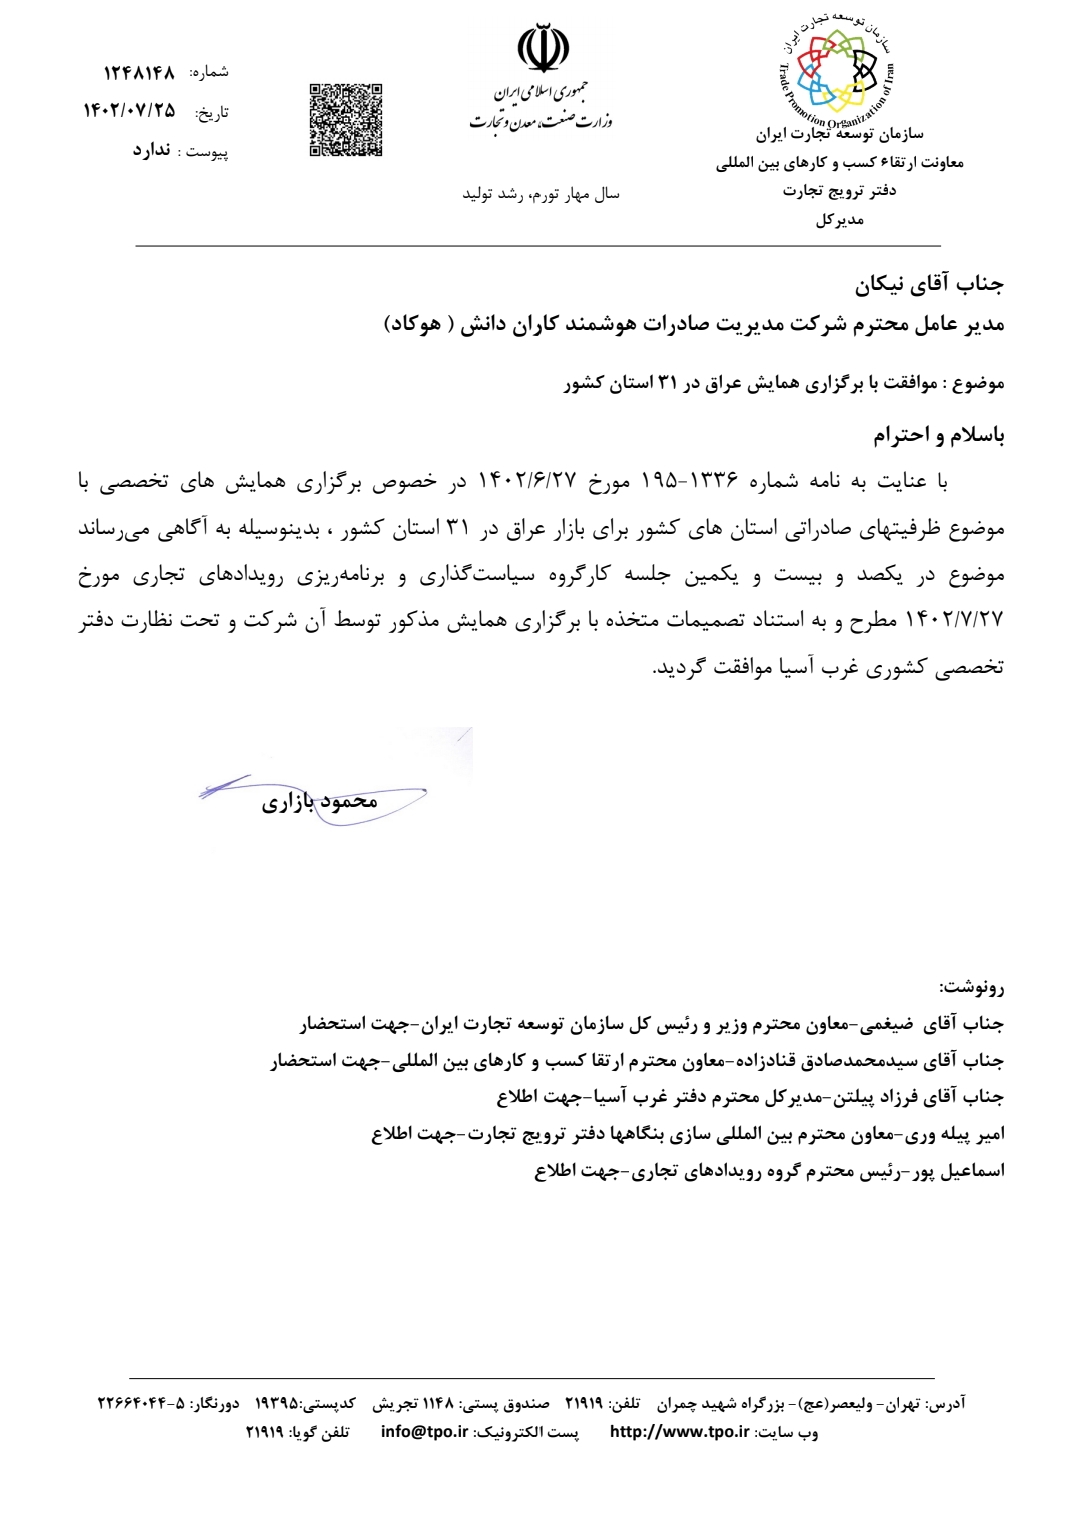 مجوز برگزاری همایش در 31 استان. هوکاد